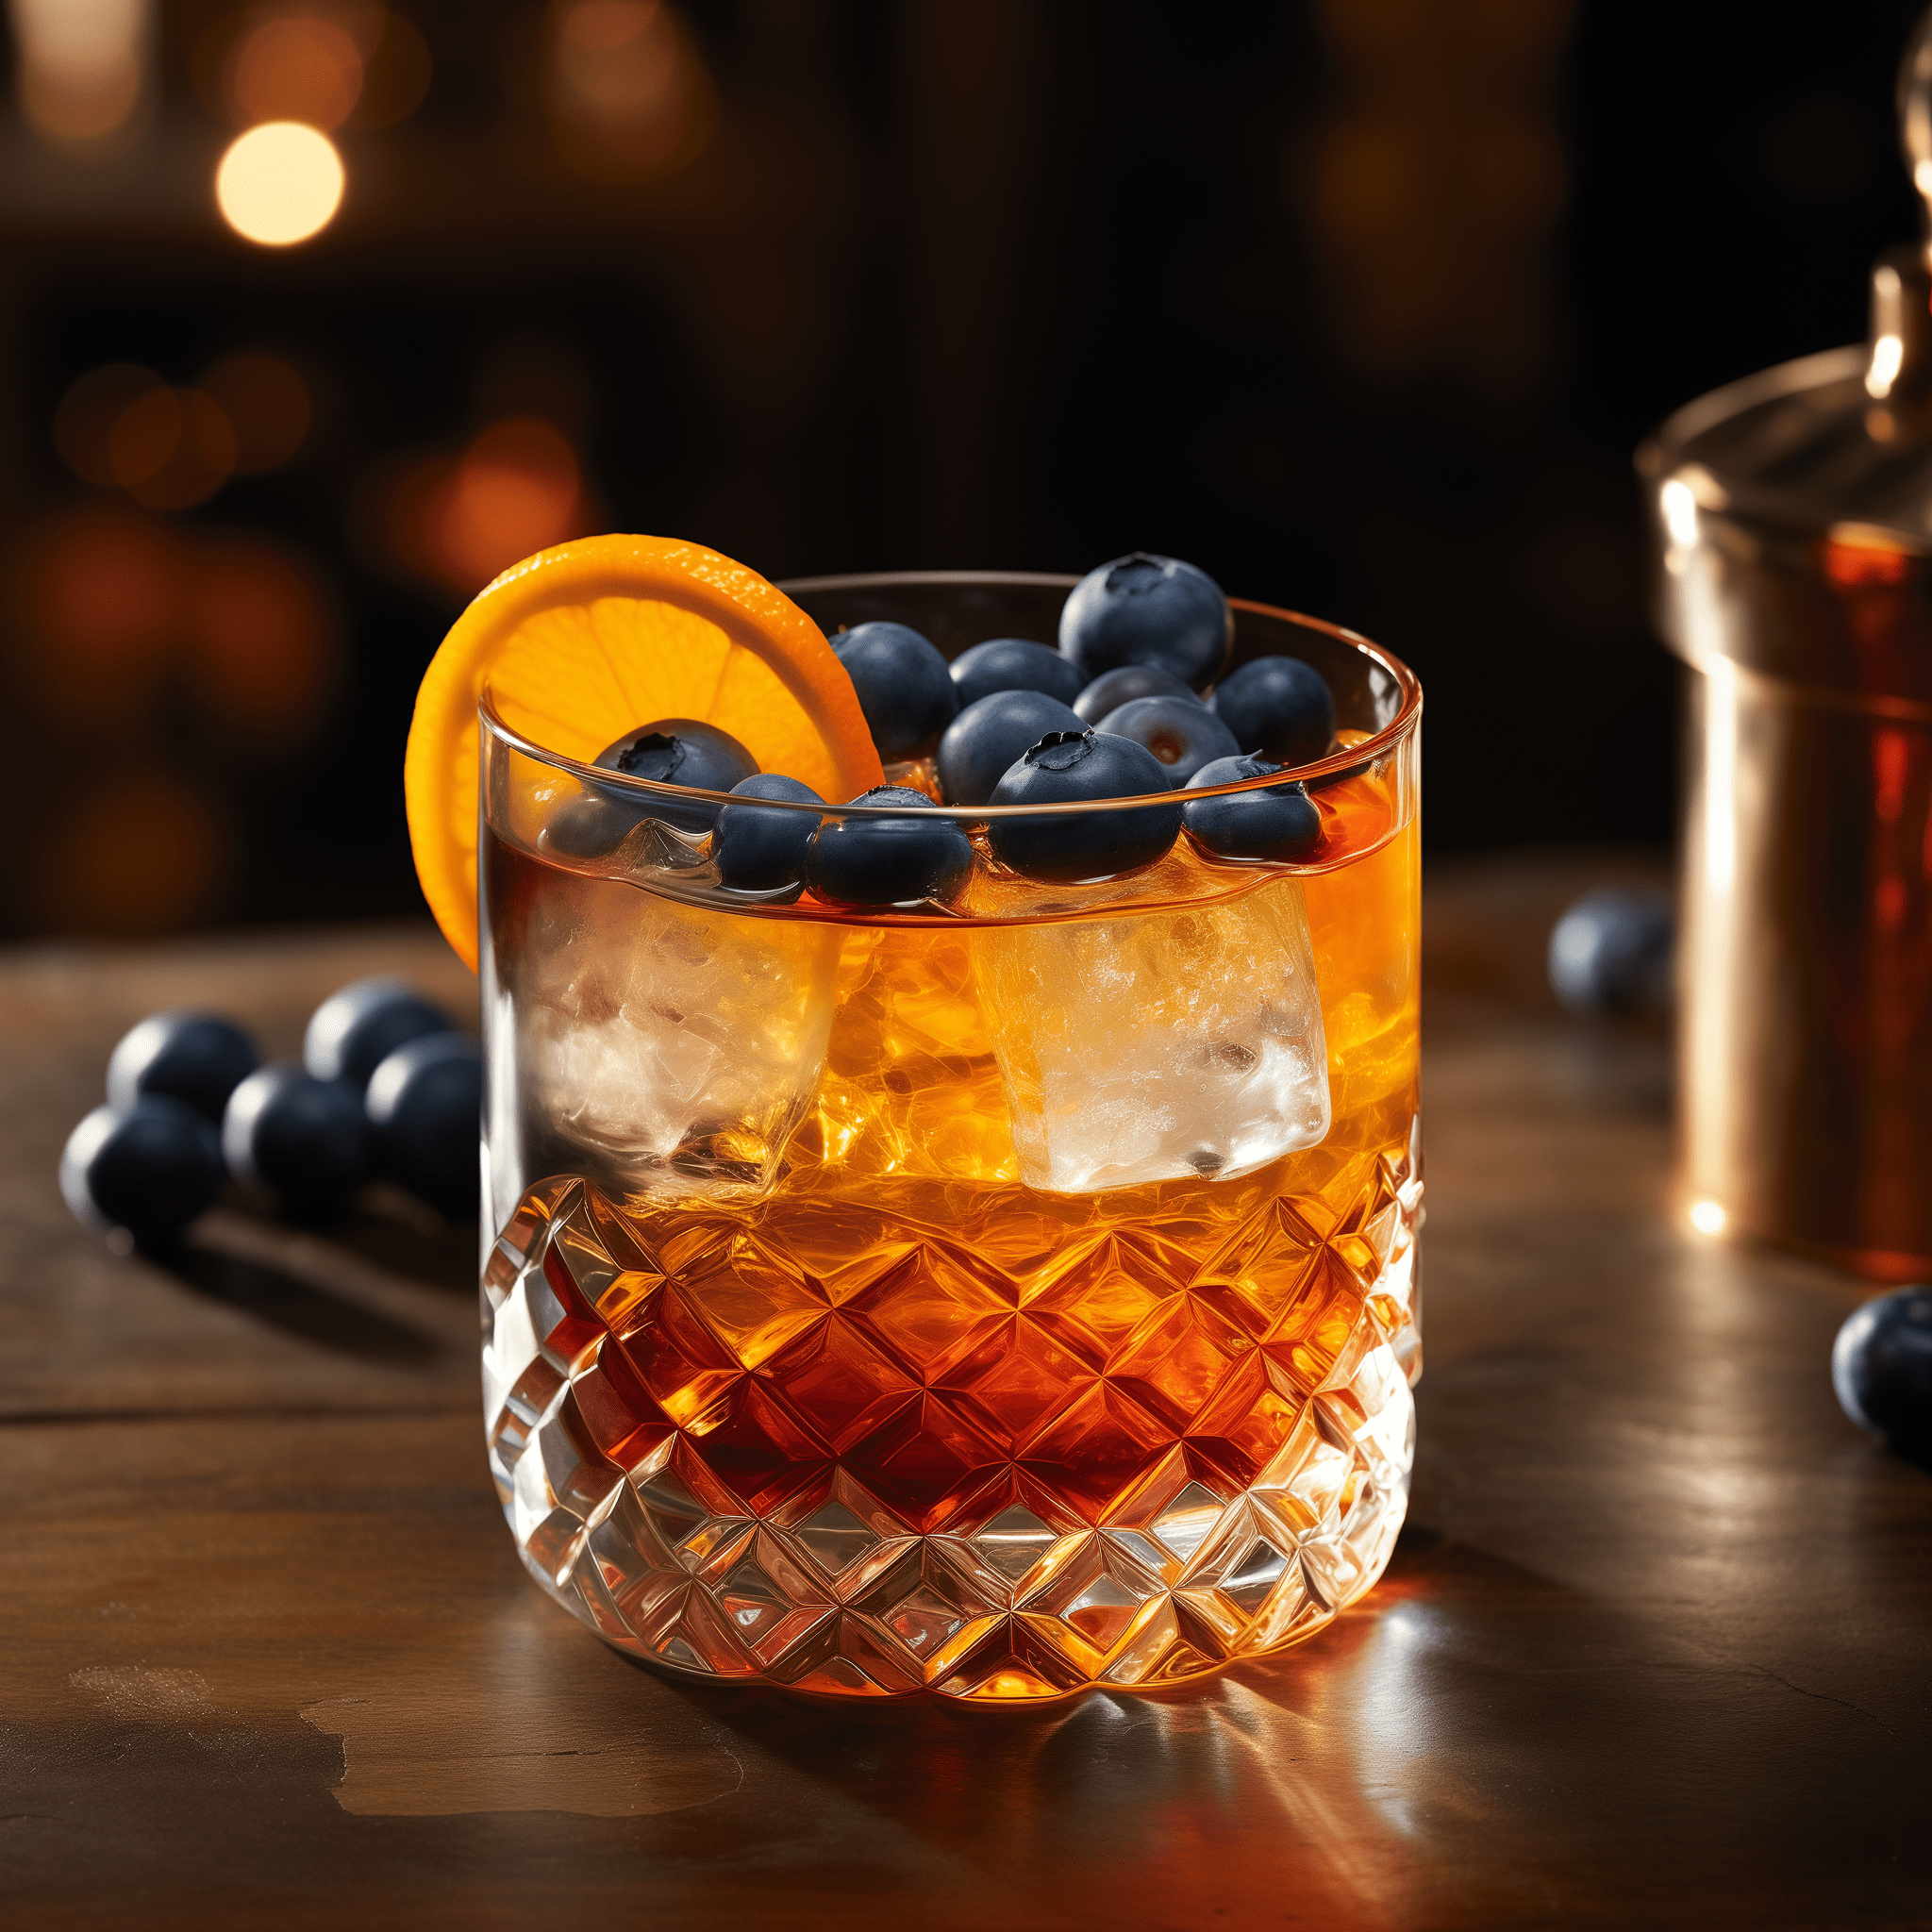 Blueberry Old Fashioned Cóctel Receta - El Blueberry Old Fashioned tiene un sabor rico y suave con un equilibrio de dulce y ácido de los arándanos. El whisky proporciona una base cálida y amaderada, mientras que los amargos añaden complejidad. Es un cóctel robusto con un refrescante final afrutado.